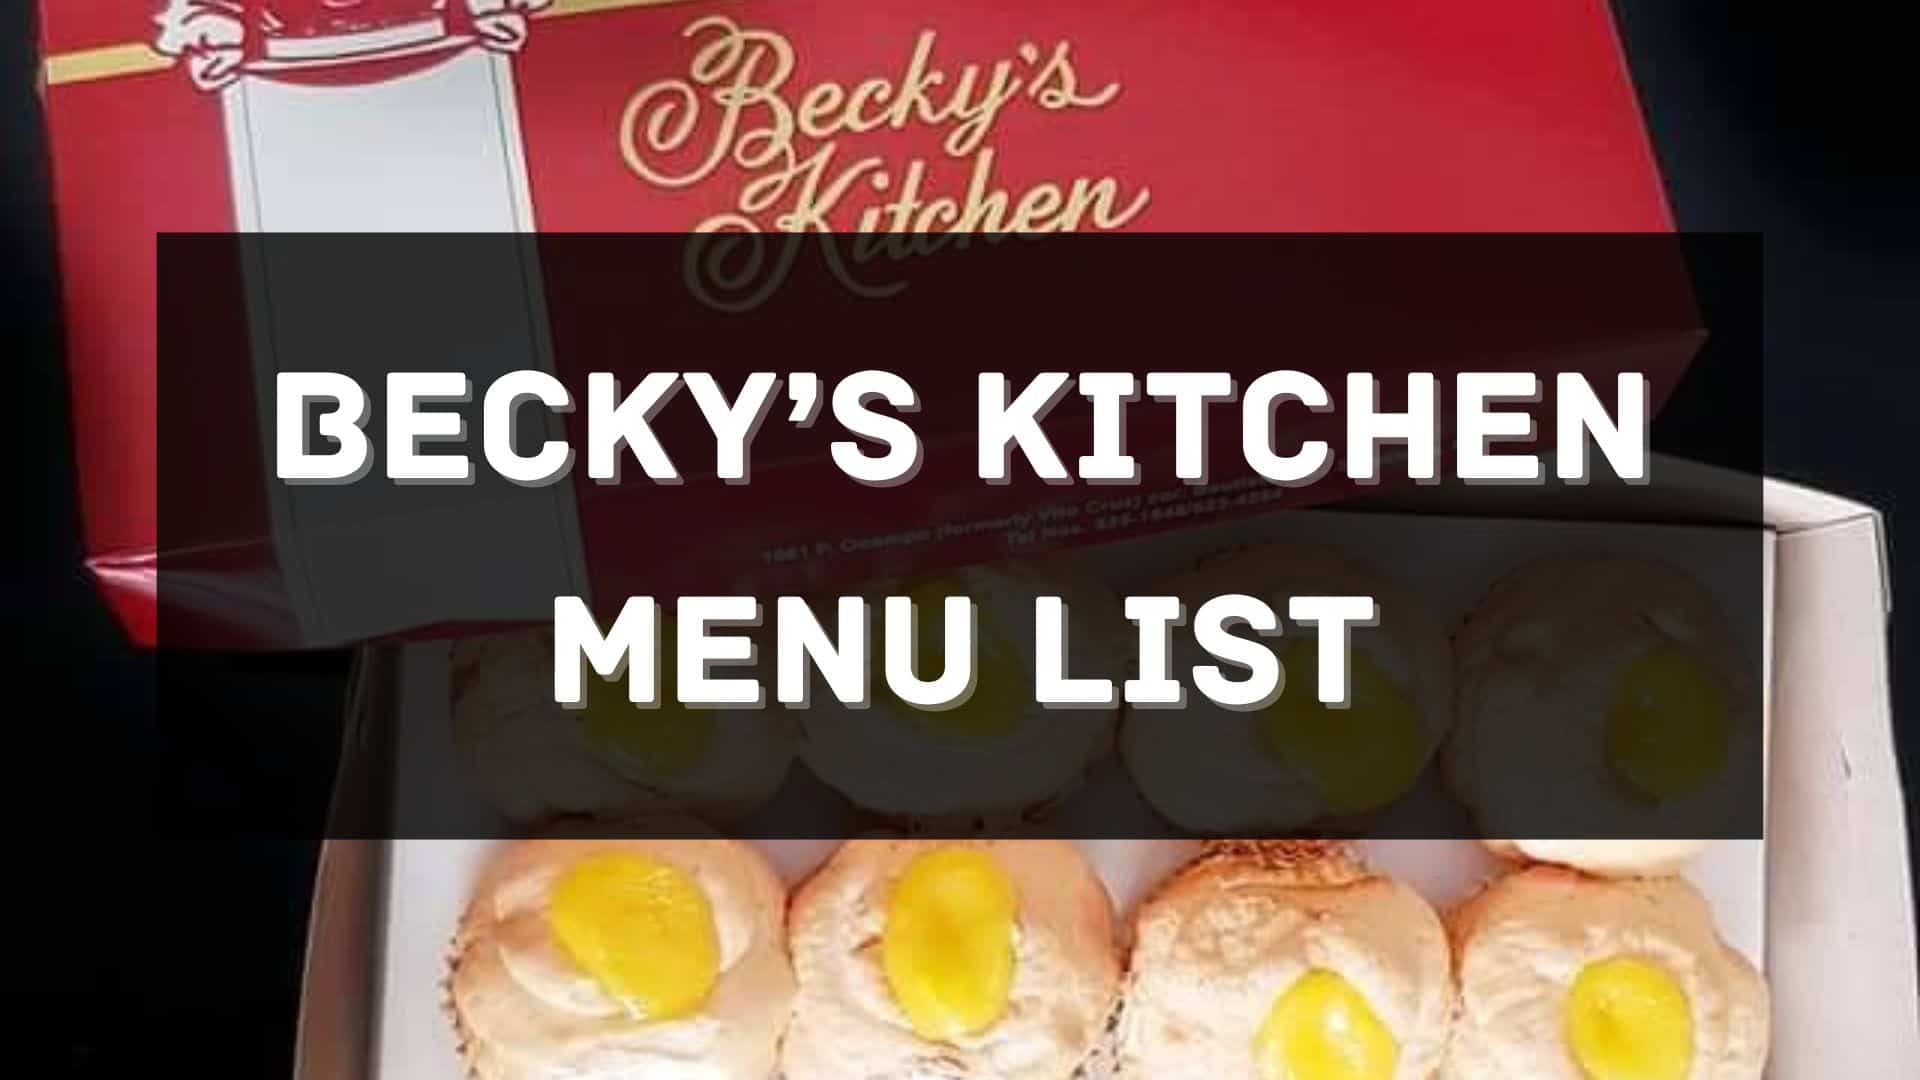 becky's kitchen menu prices philippines